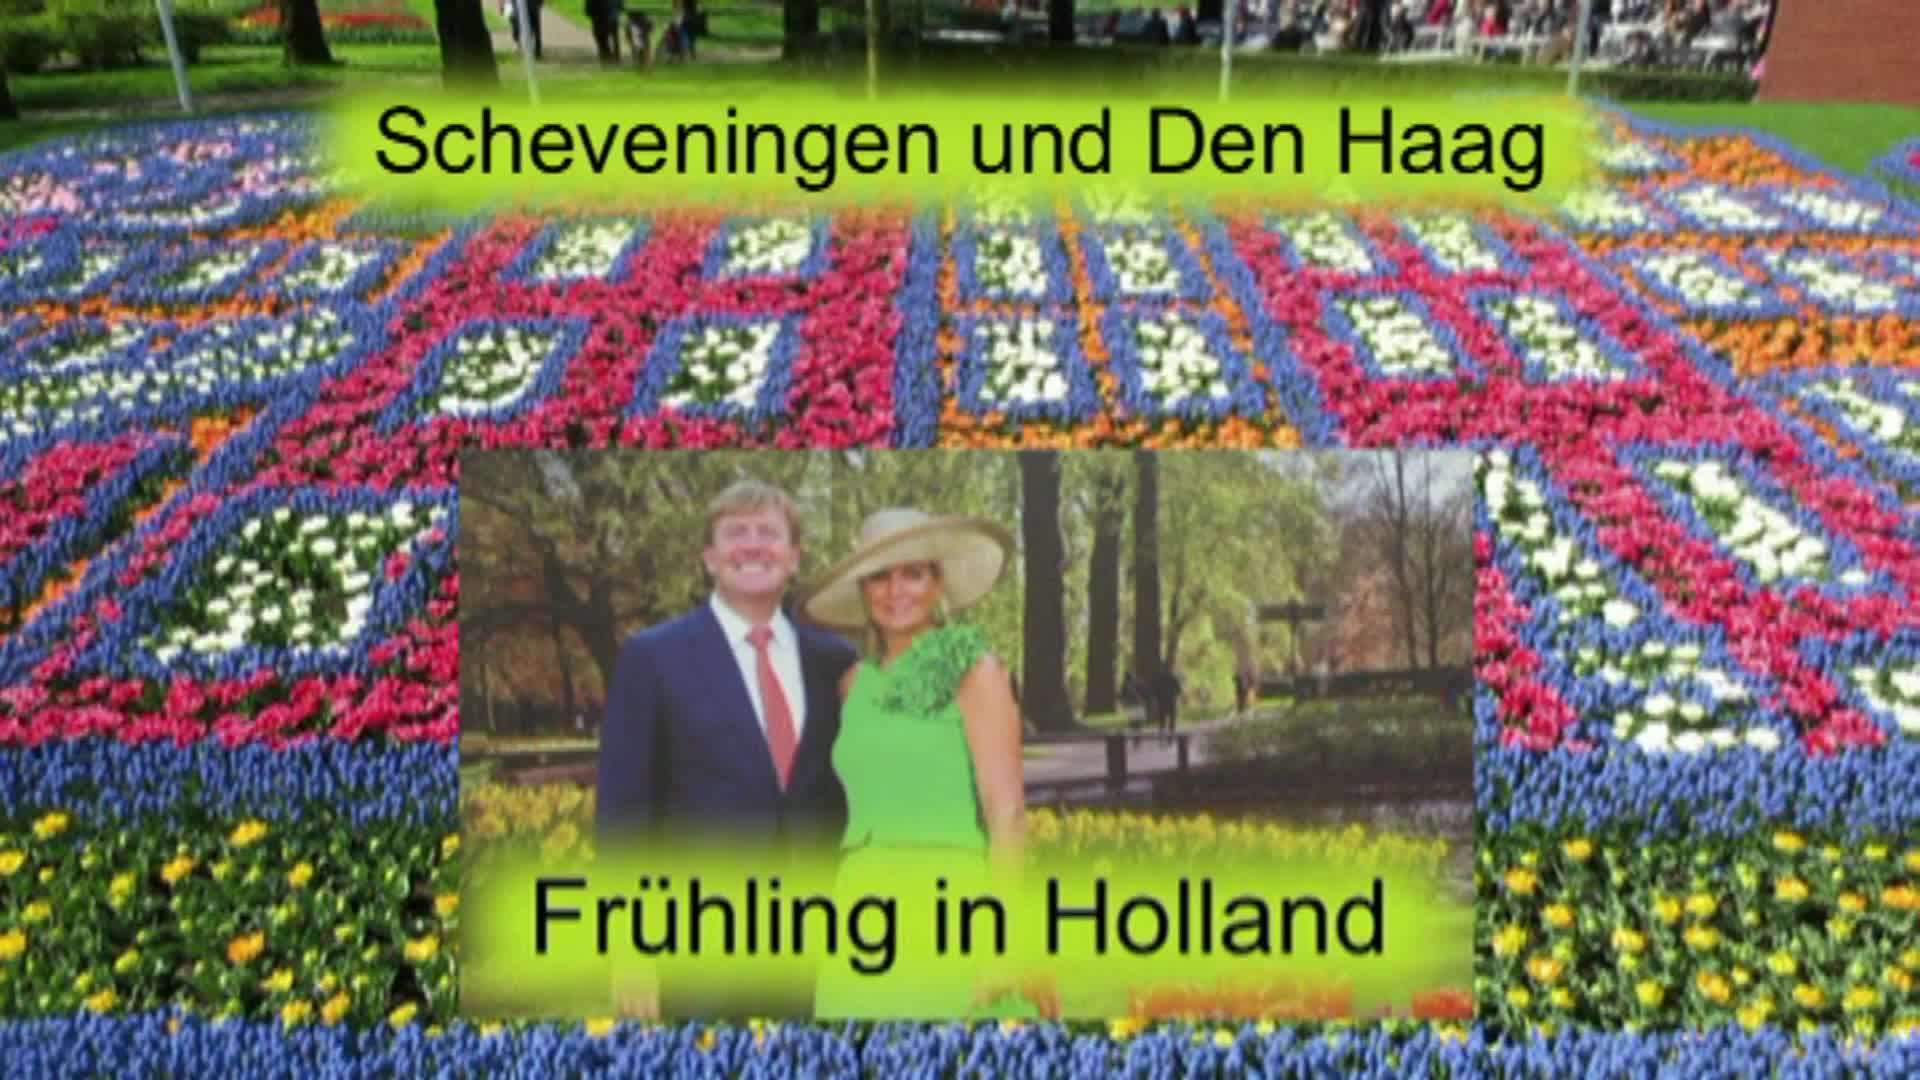 Frühling in Holland (2) Scheveningen und Den Haag